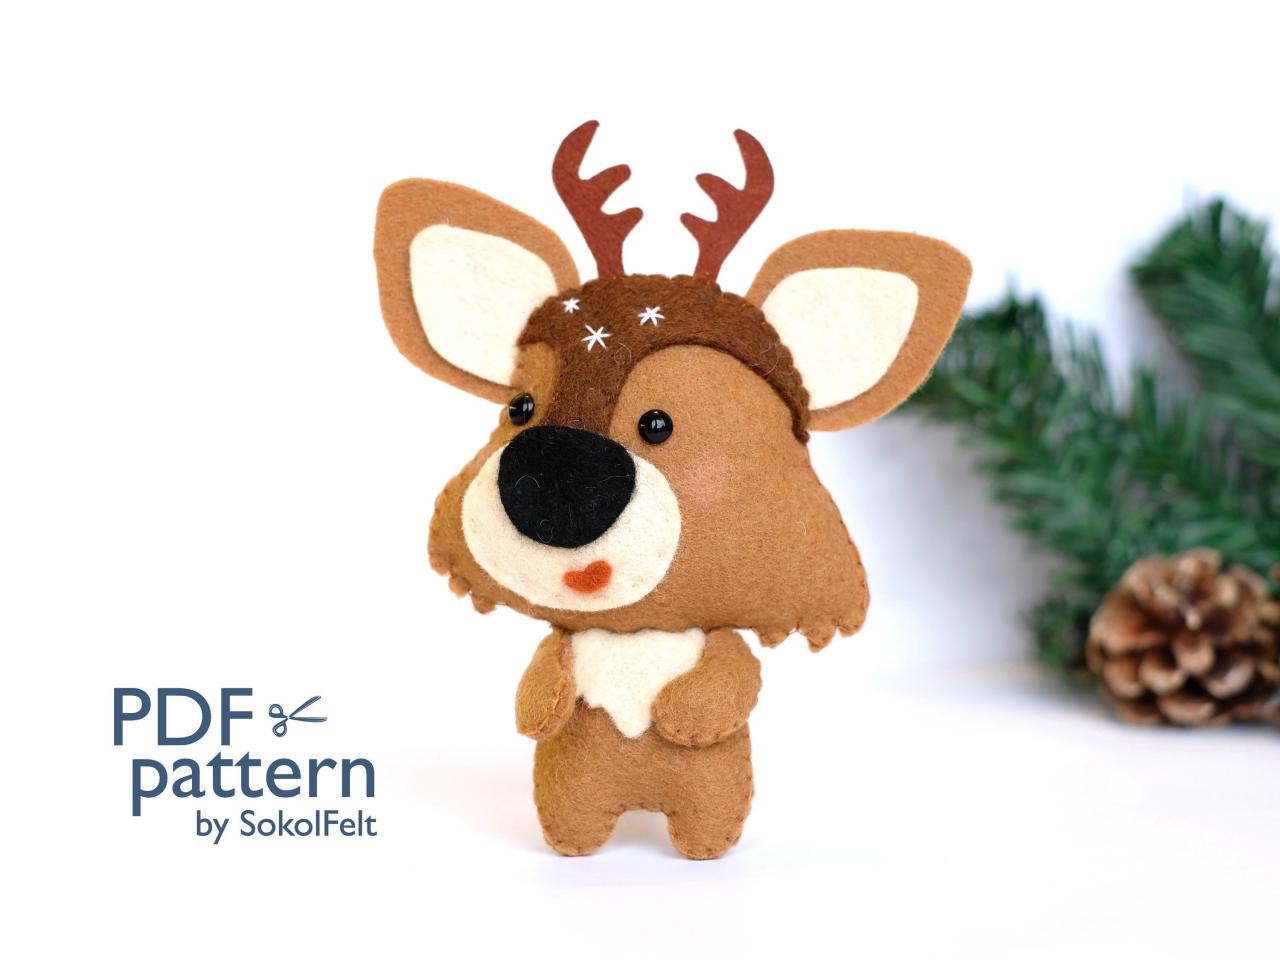 Felt reindeer toy sewing PDF pattern, Felt reindeer ornament, felt woodland animal, Felt Christmas ornament, DIY Rudolf deer toy